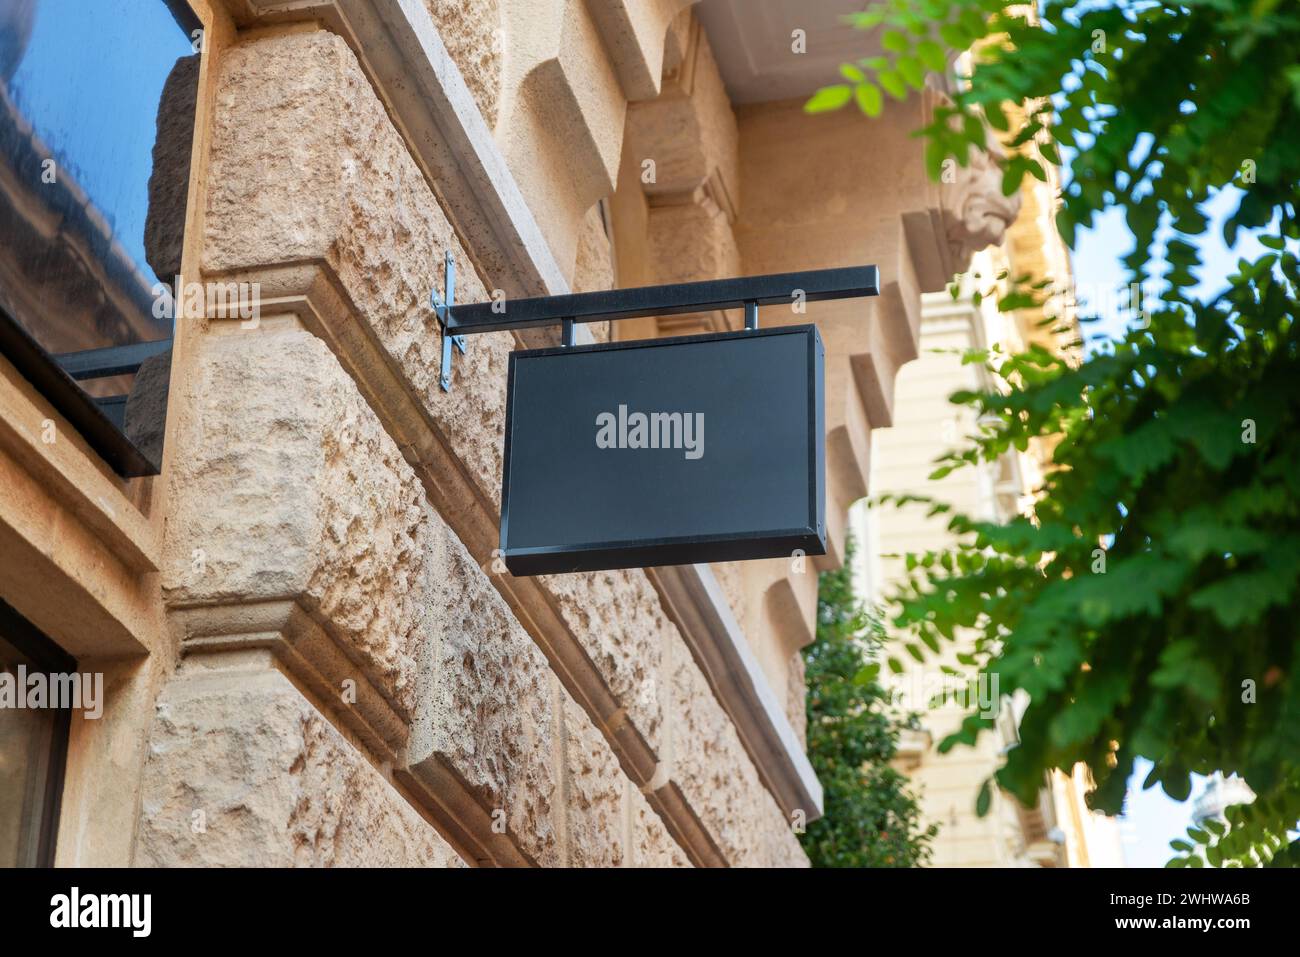 Klare rechteckige Schilder über einem Geschäft in einer Stadtstraße bieten eine hervorragende Plattform für Logo-Werbung und Markensichtbarkeit Stockfoto